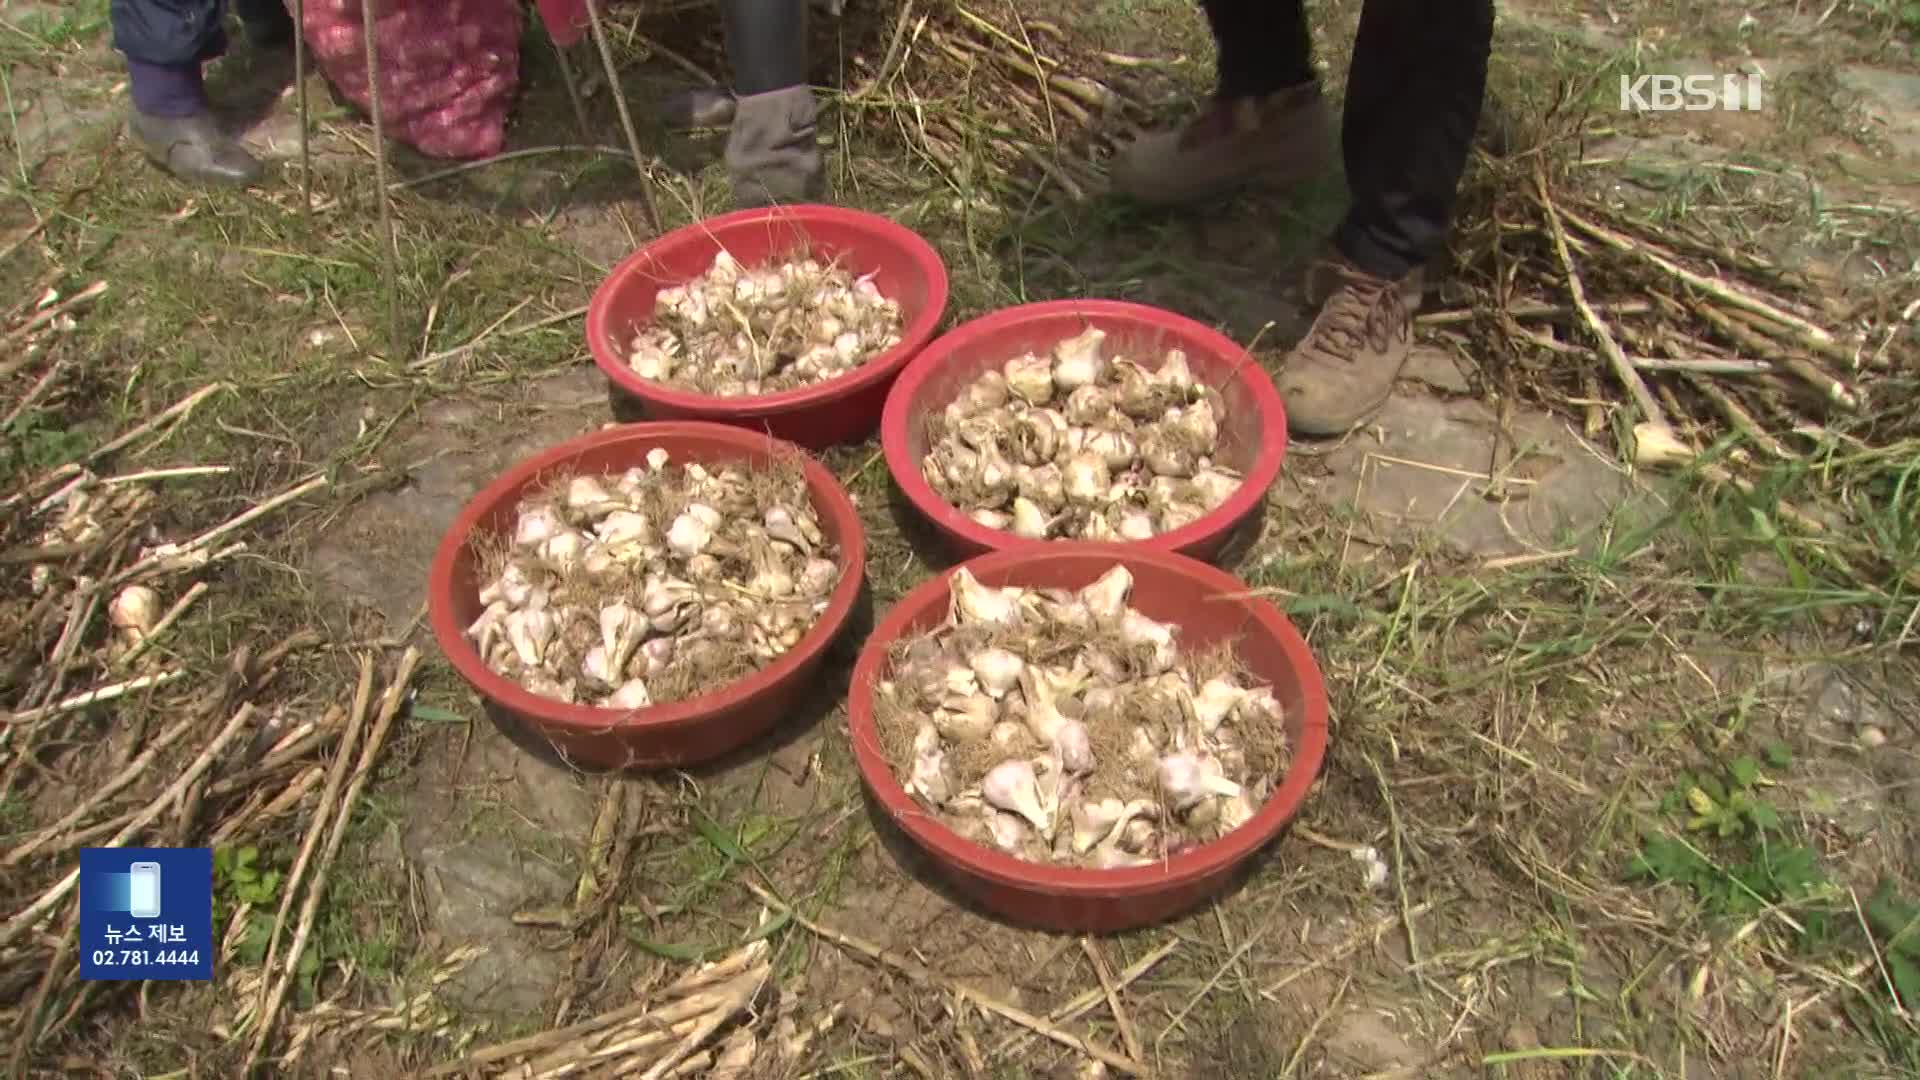 마늘값에 속 타는 농민들…농작물 절도 기승